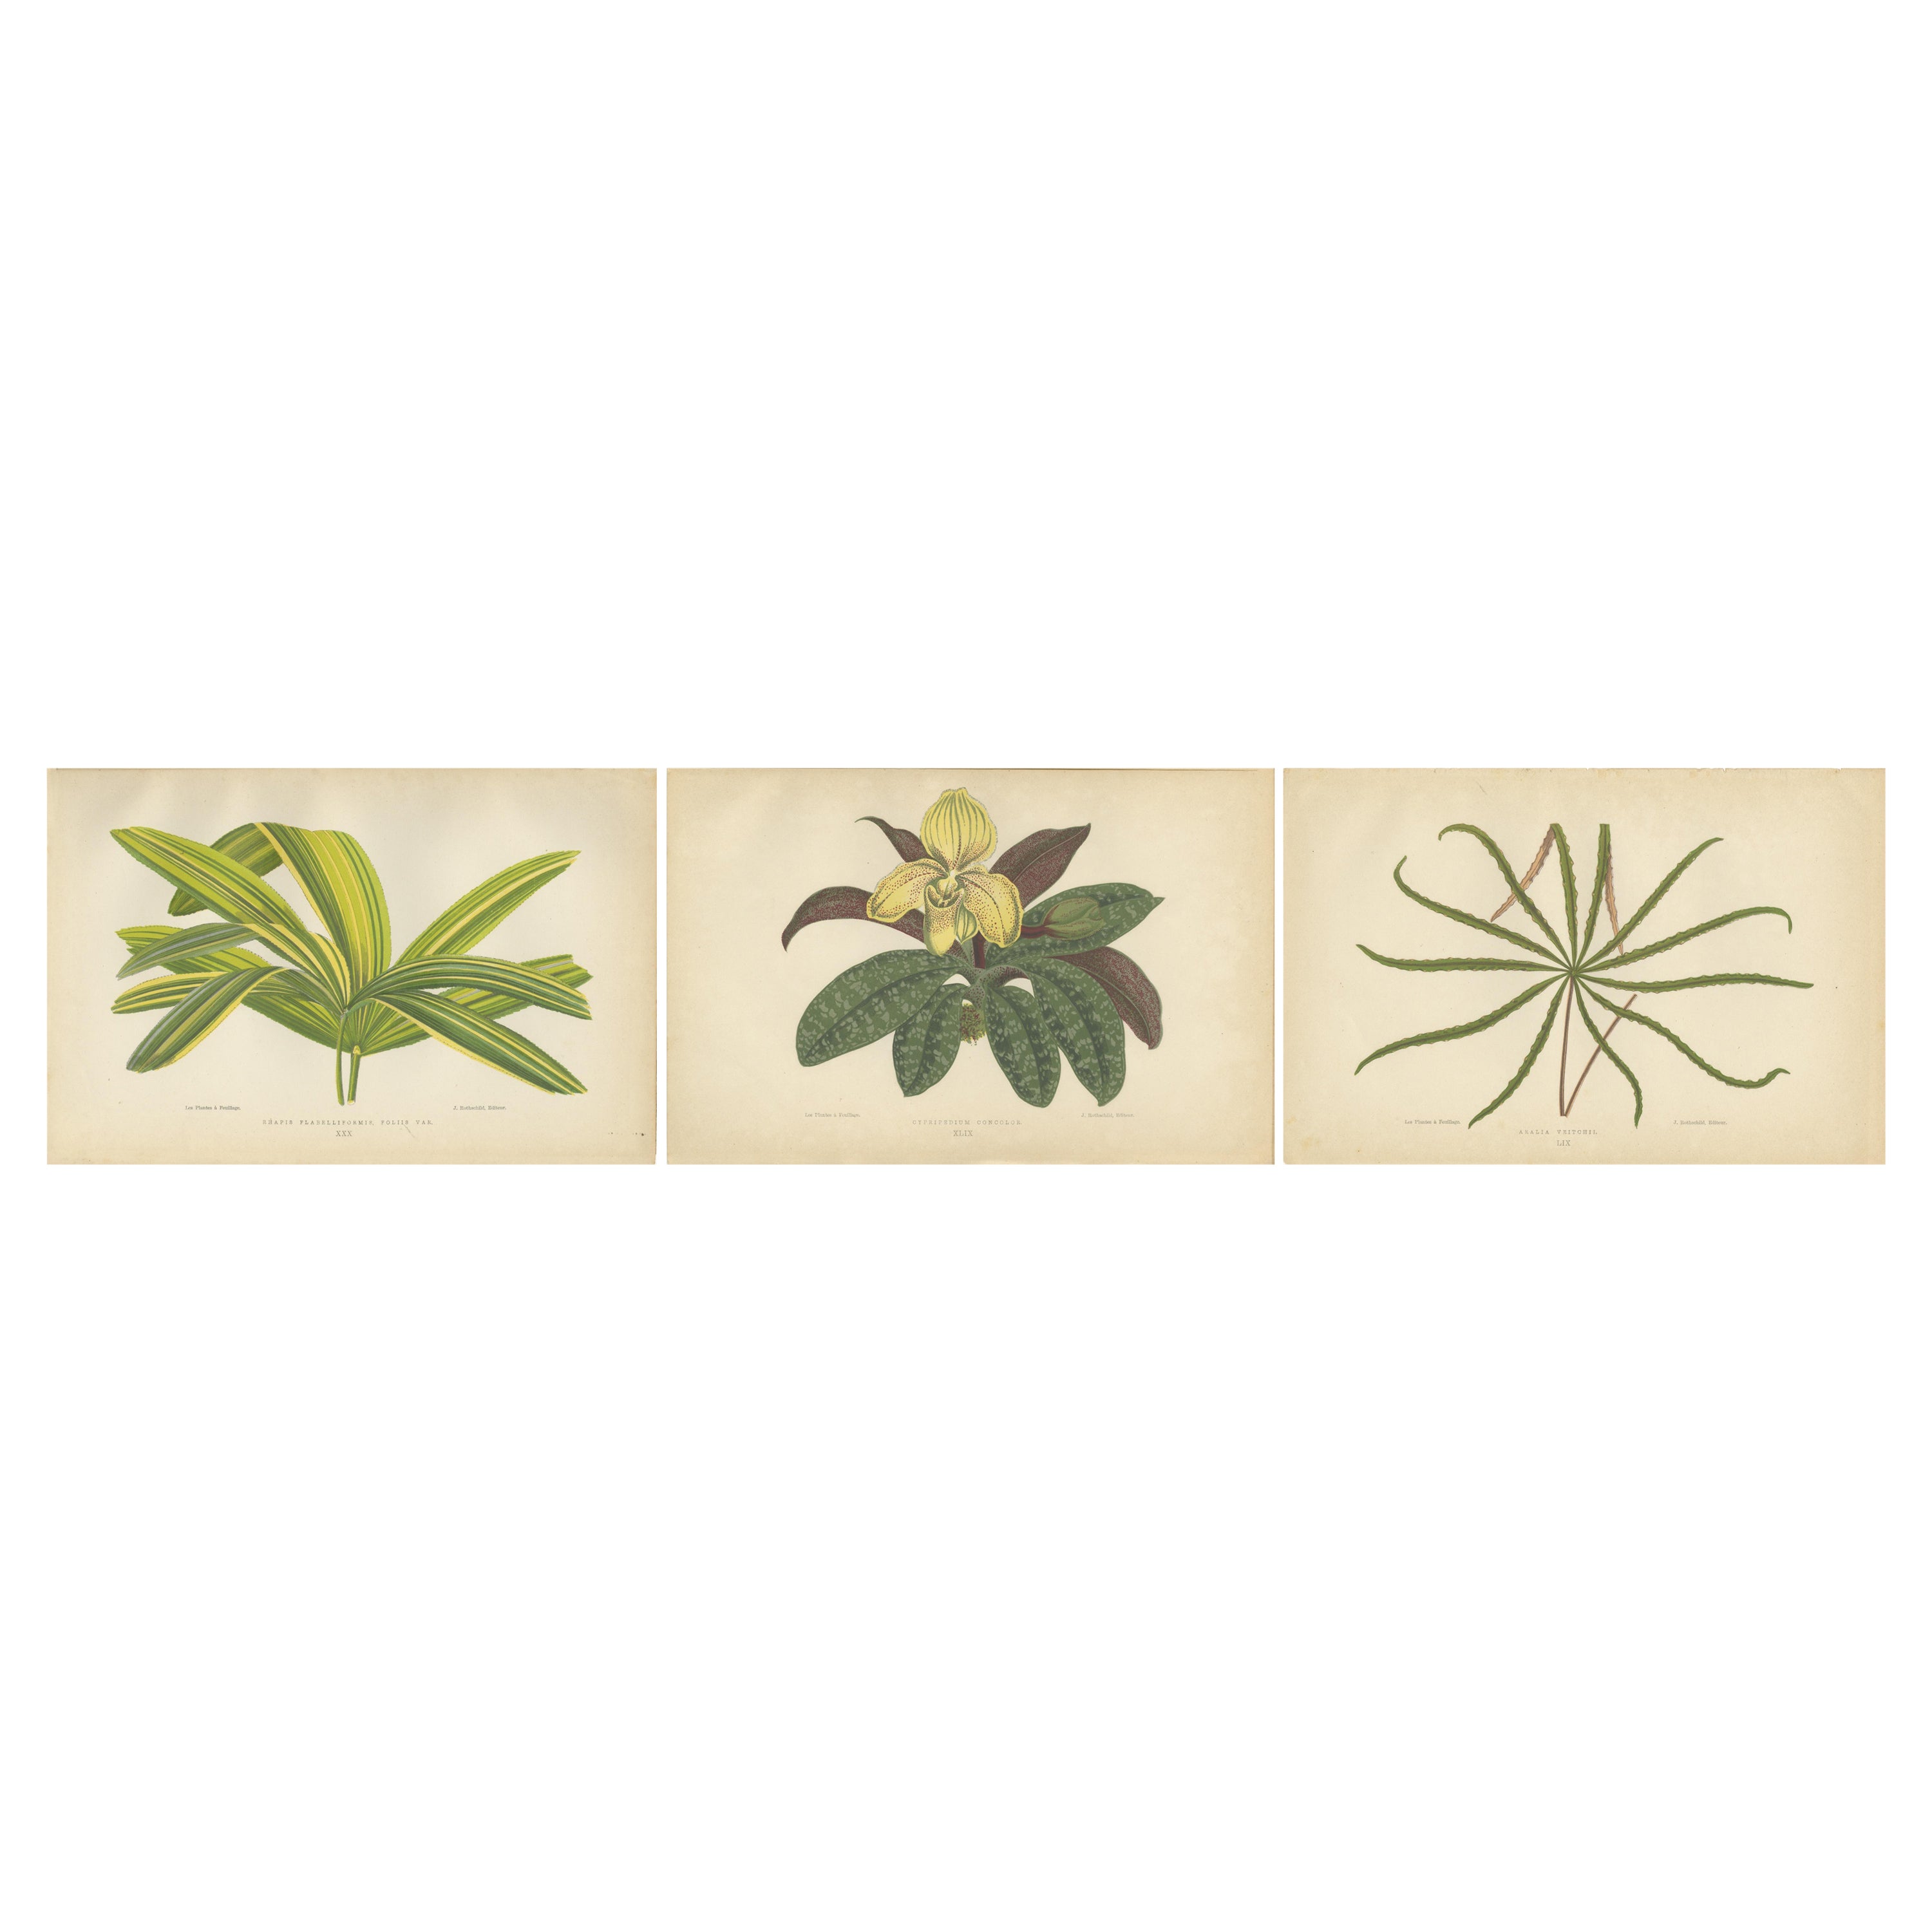 Trio of Elegance: Vintage Botanical Prints, Published in 1880